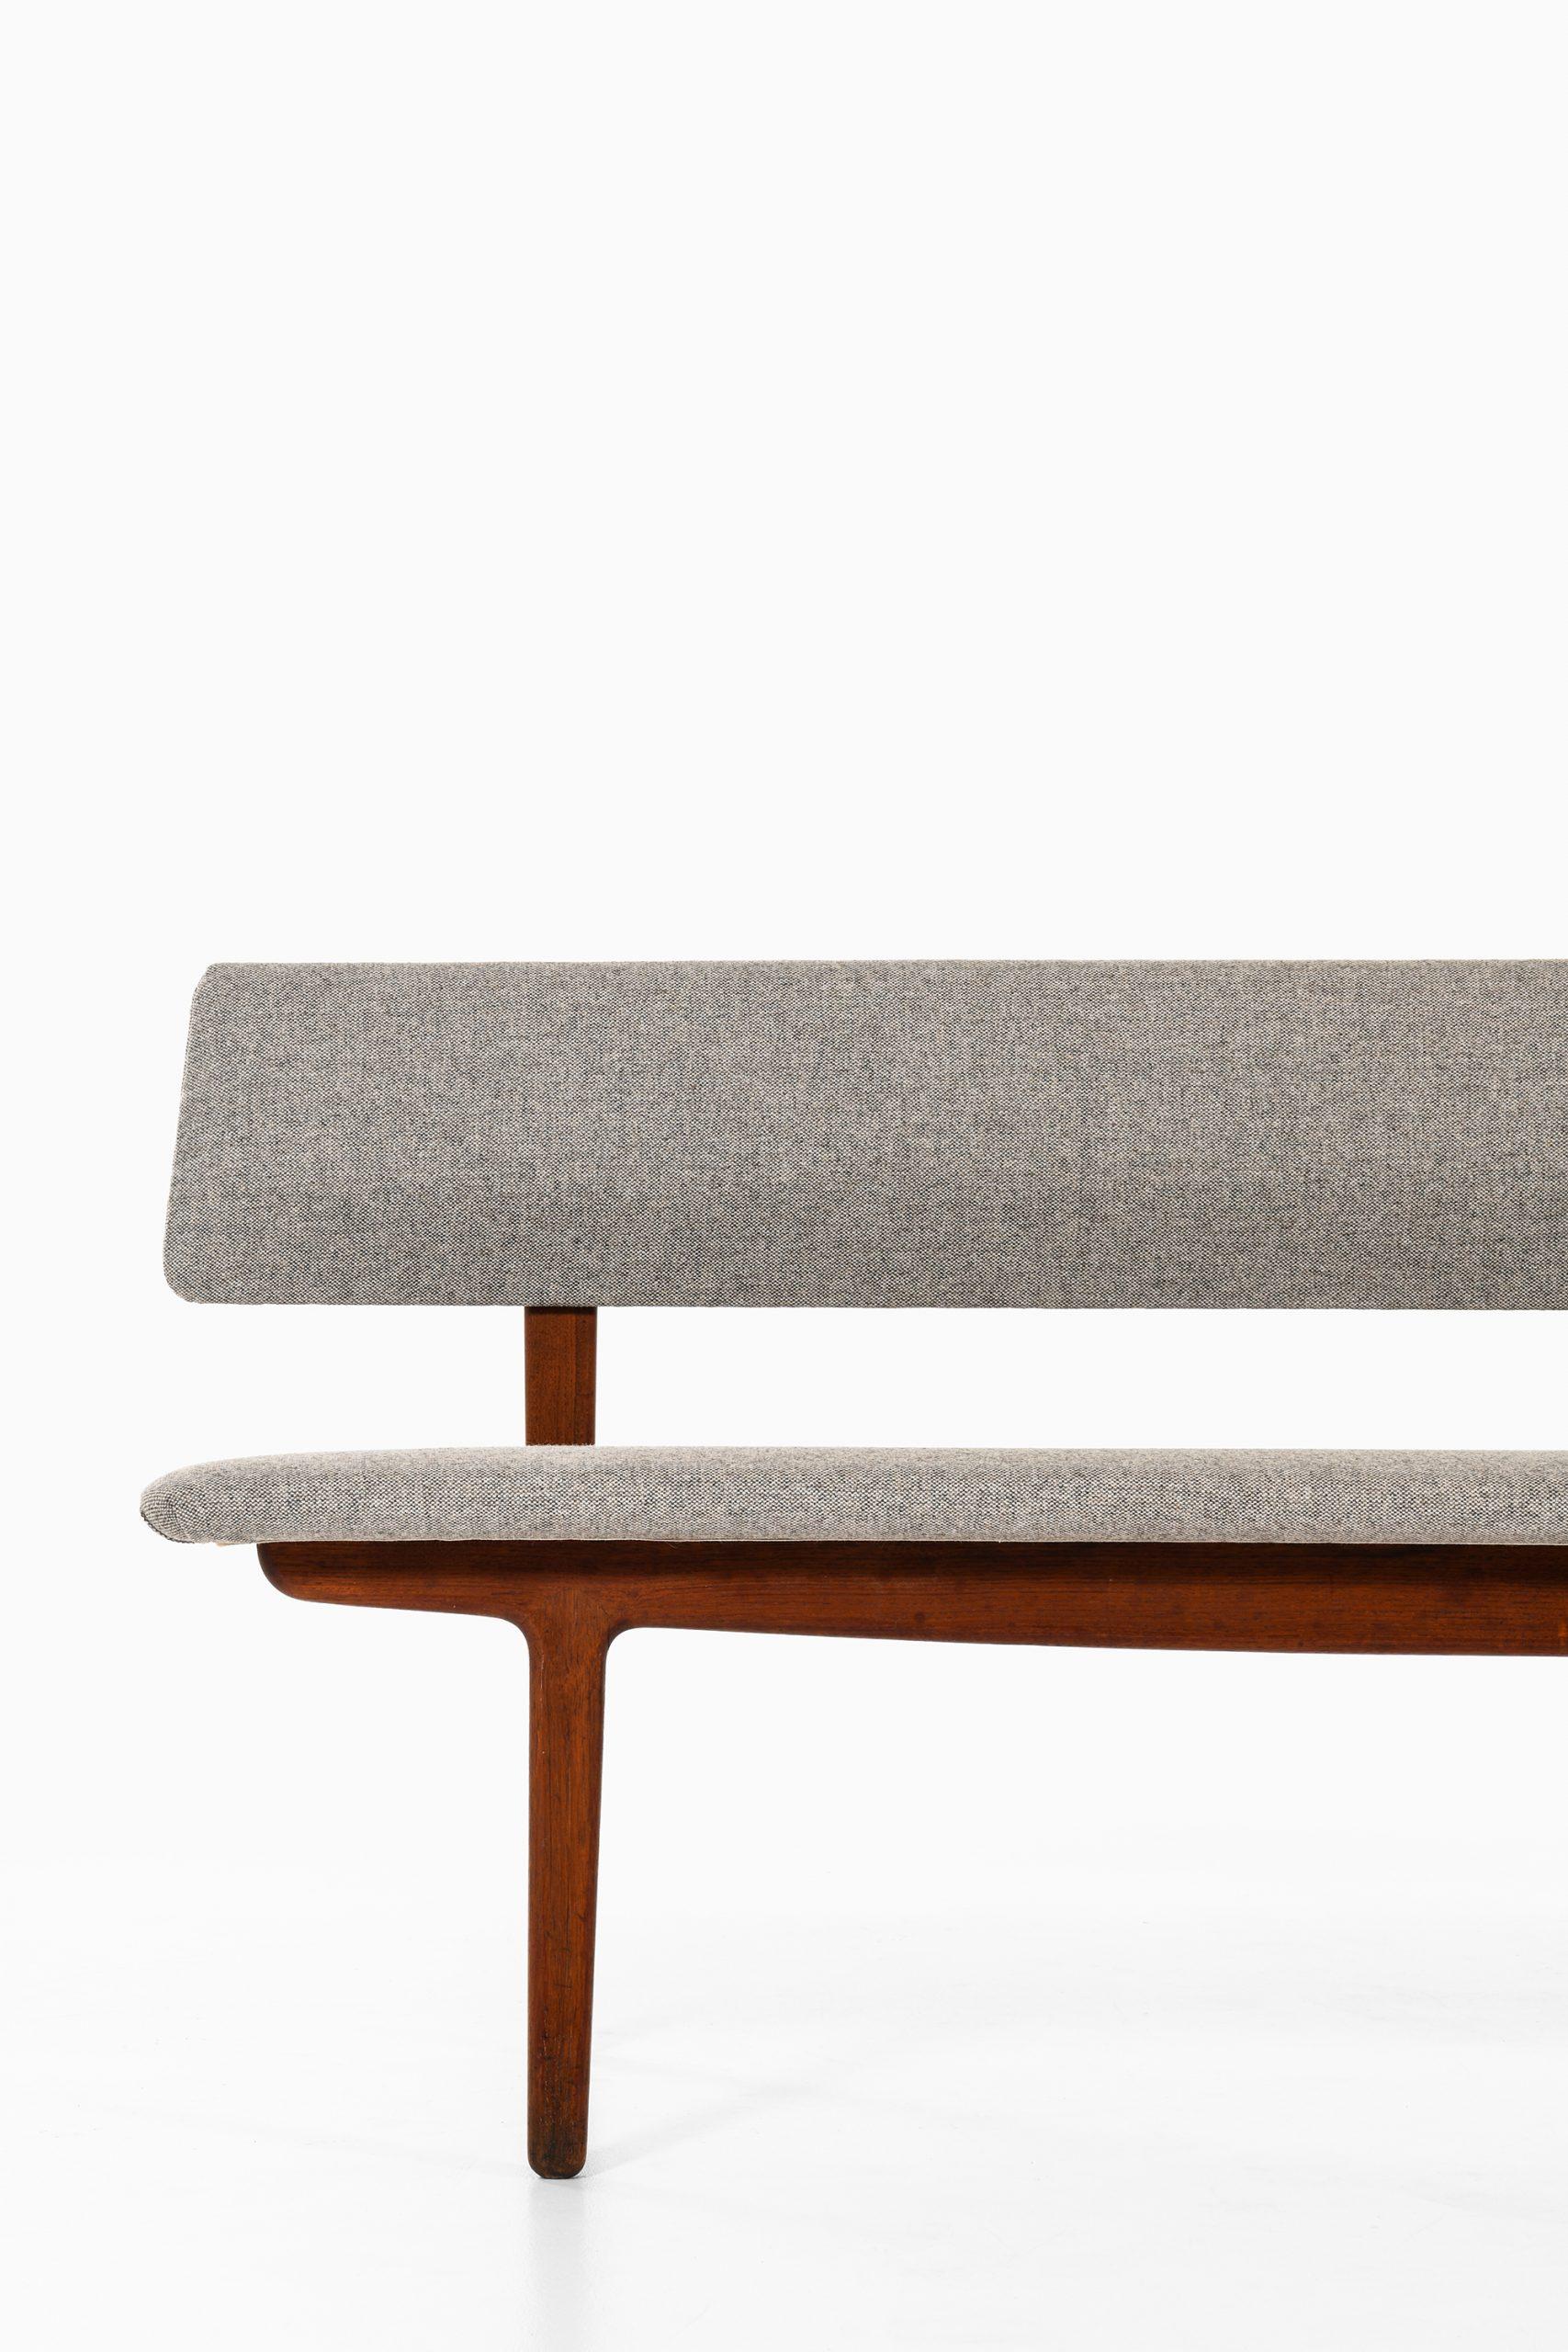 Rare bench / sofa designed by Ejner Larsen & Aksel Bender Madsen. Produced by Næstved Møbler in Denmark.